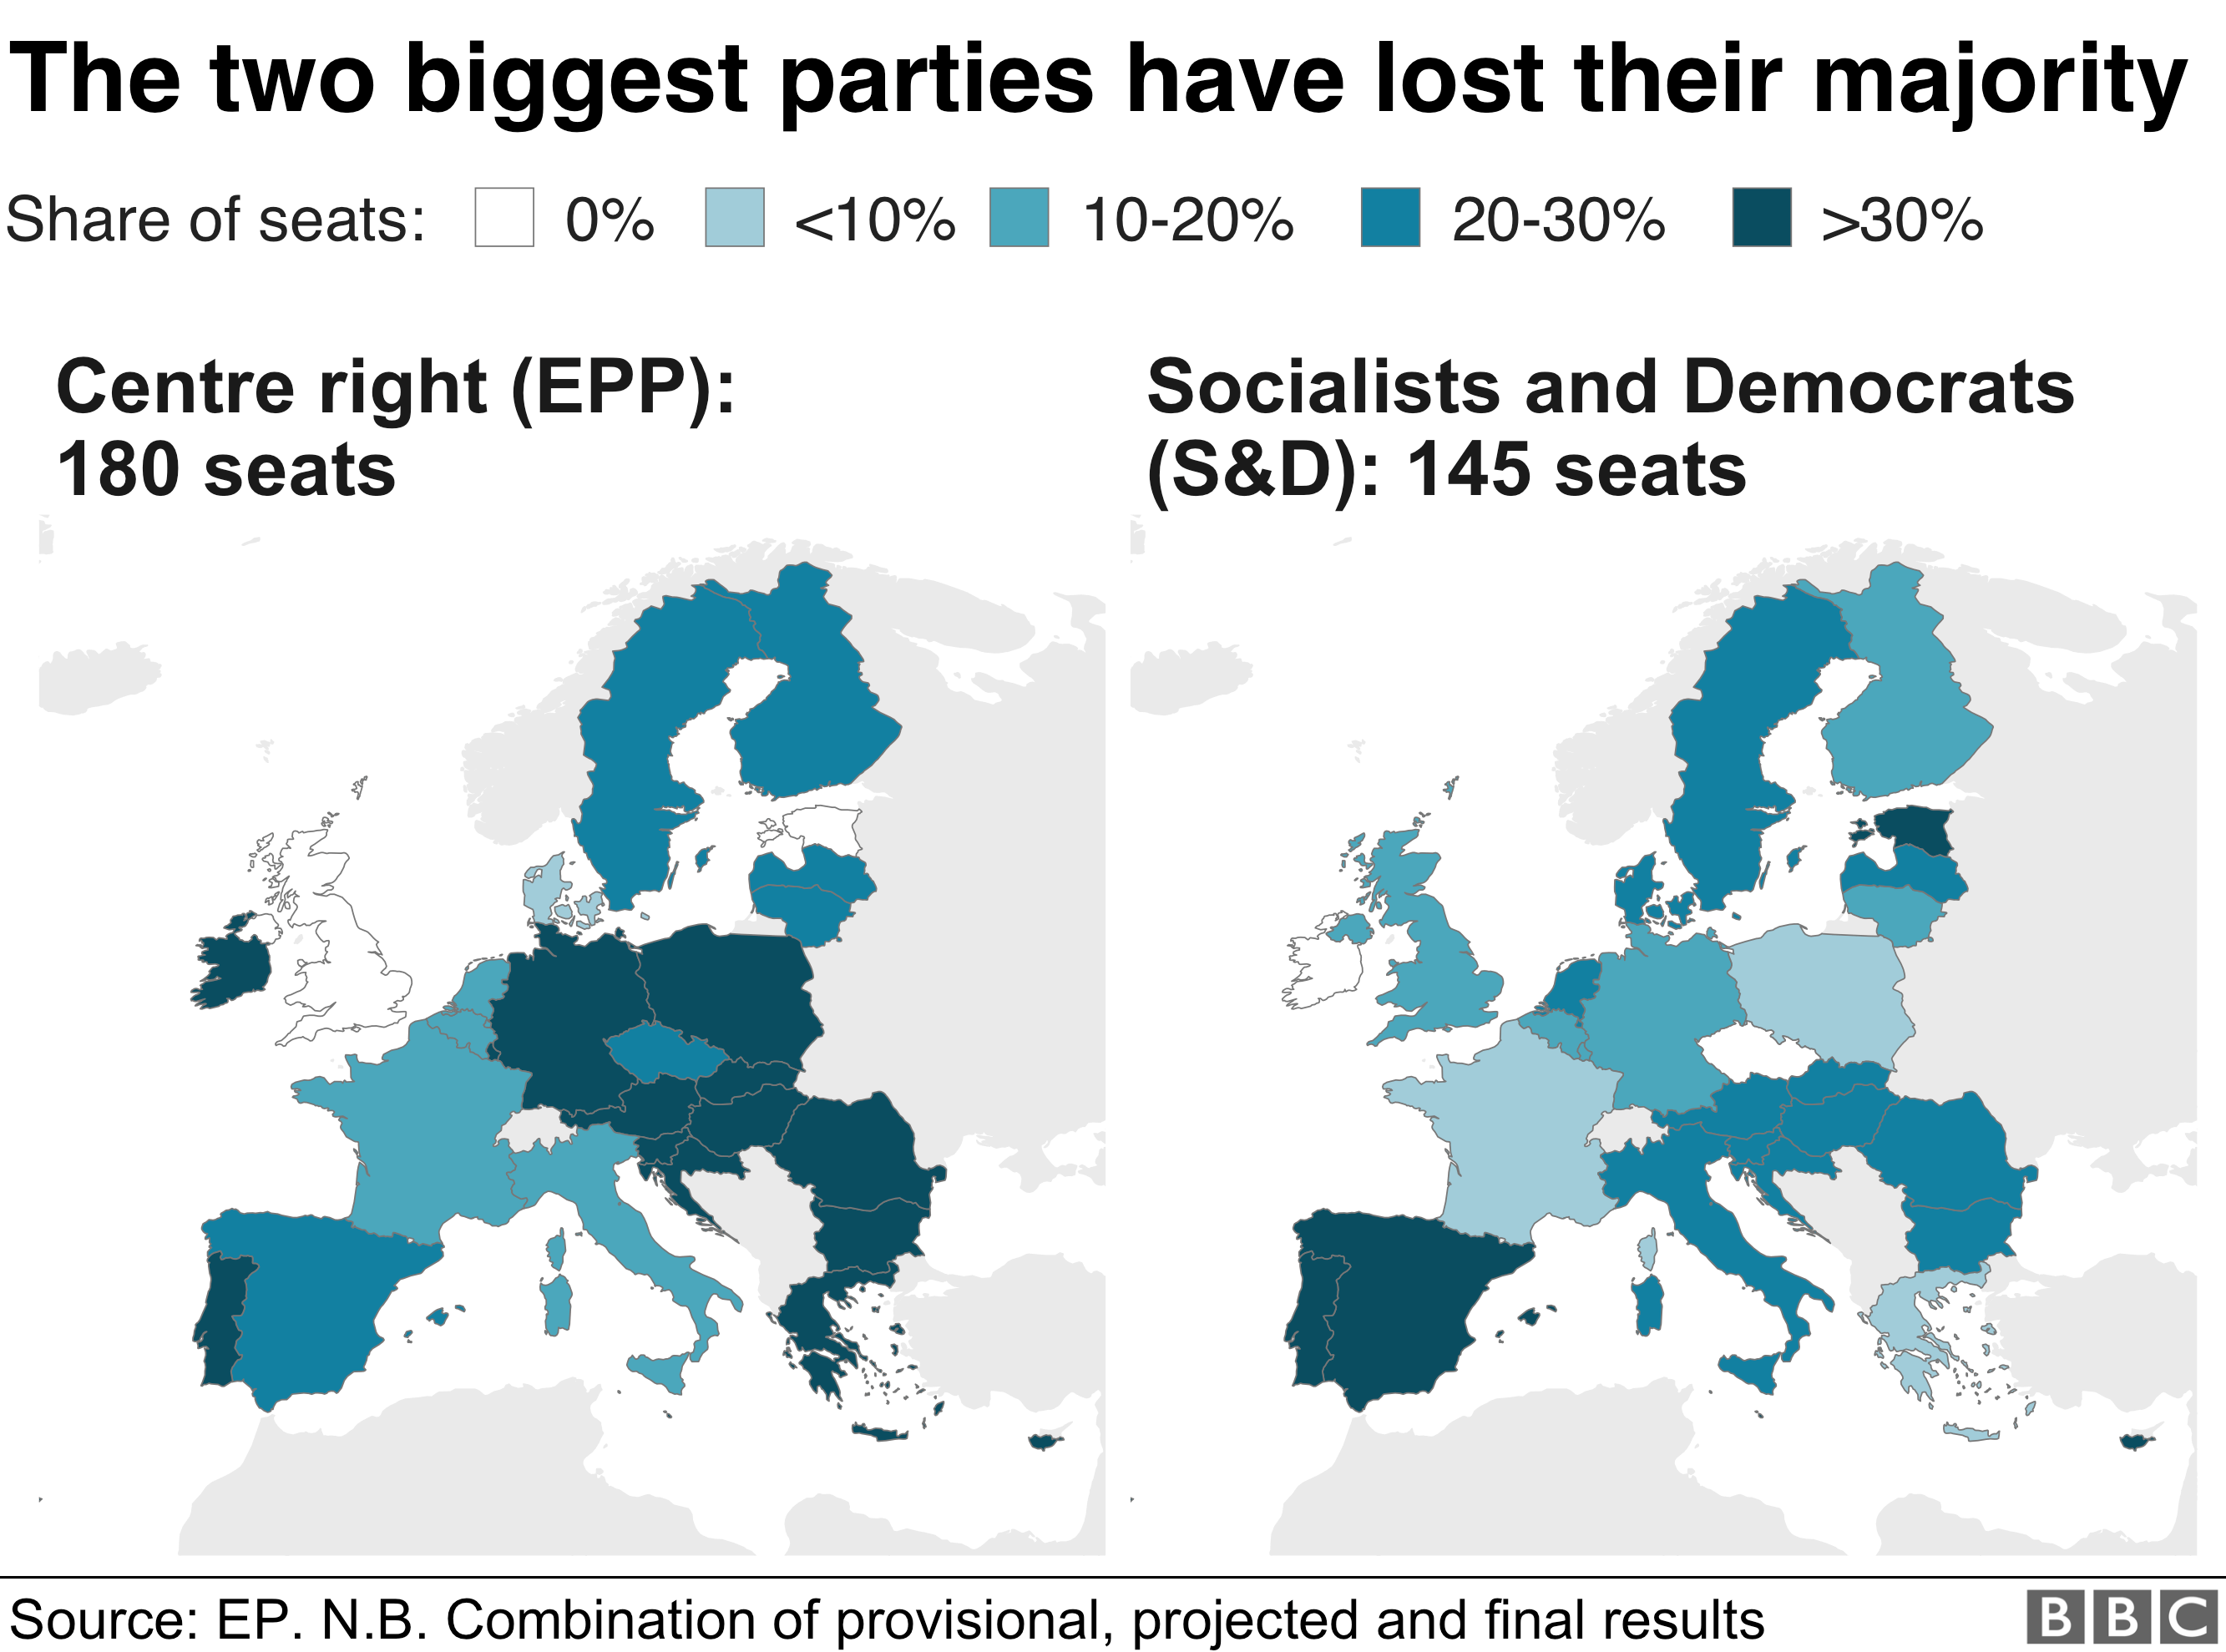 Распределение численности партии по всей Европе